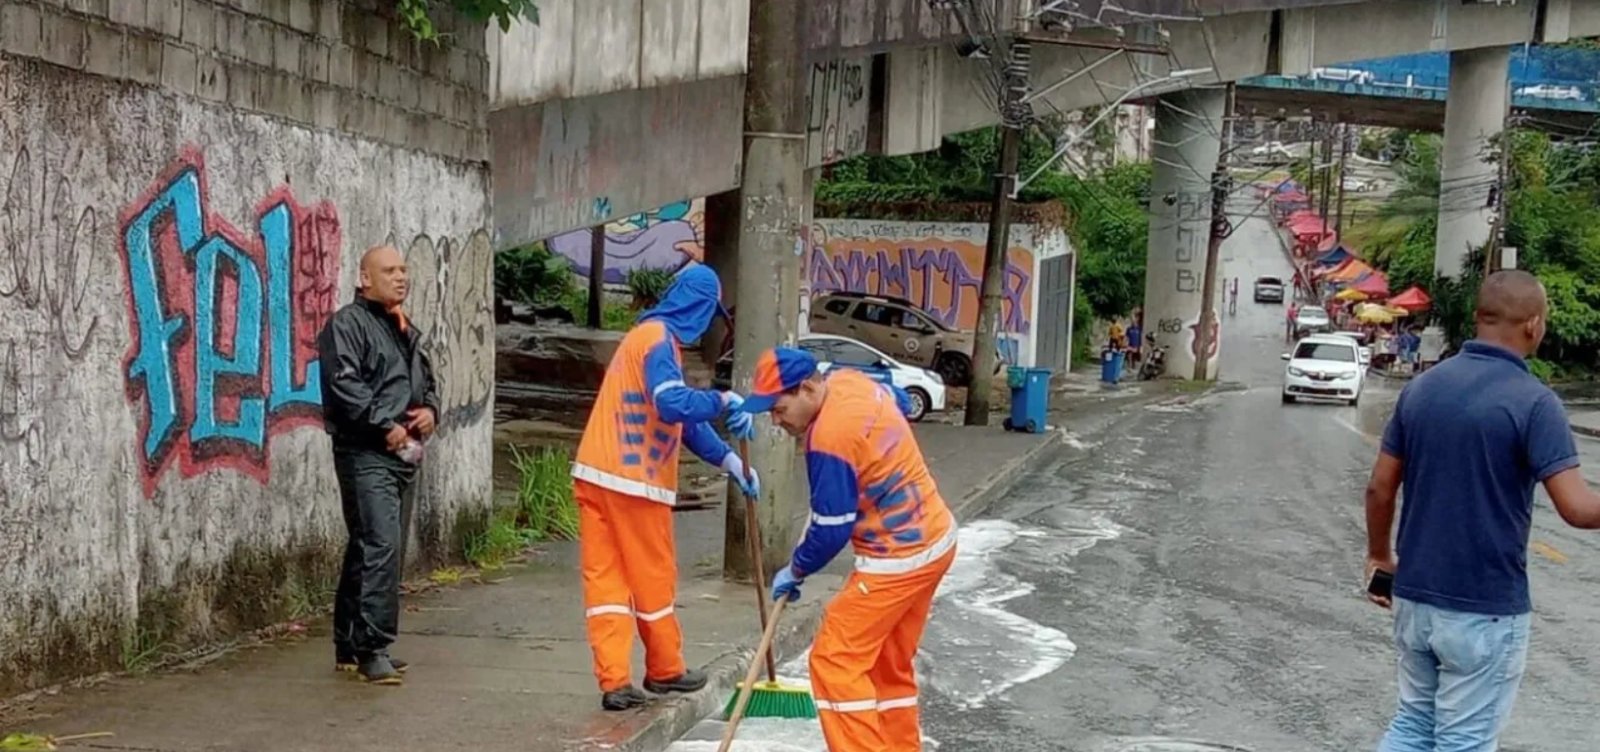 Limpurb realiza limpeza após torcedores do Vitória despejarem sardinhas próximo a Arena Fonte Nova